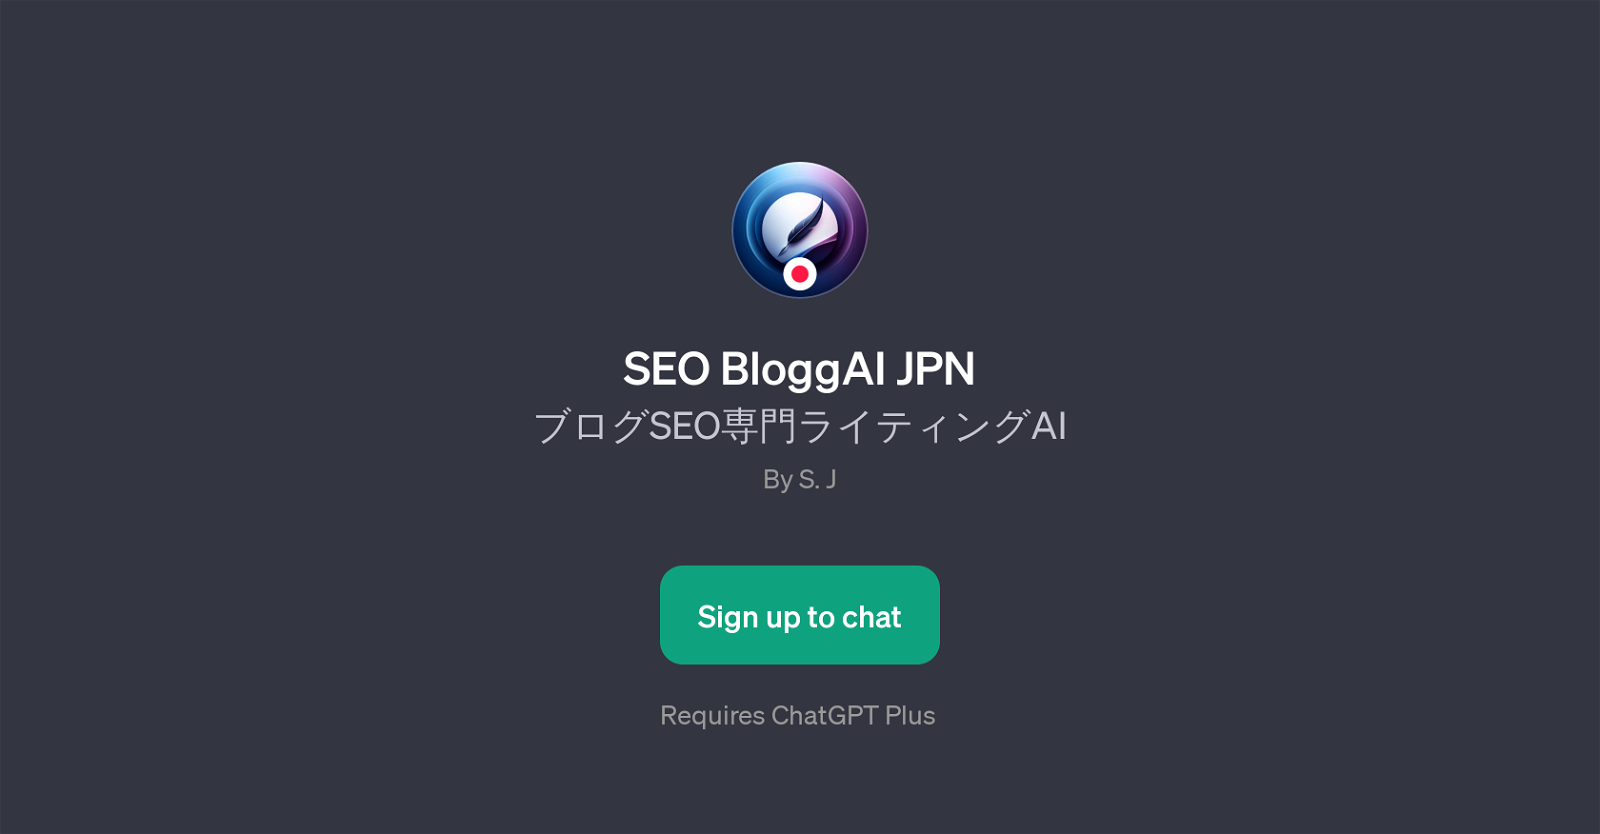 SEO BloggAI JPN website